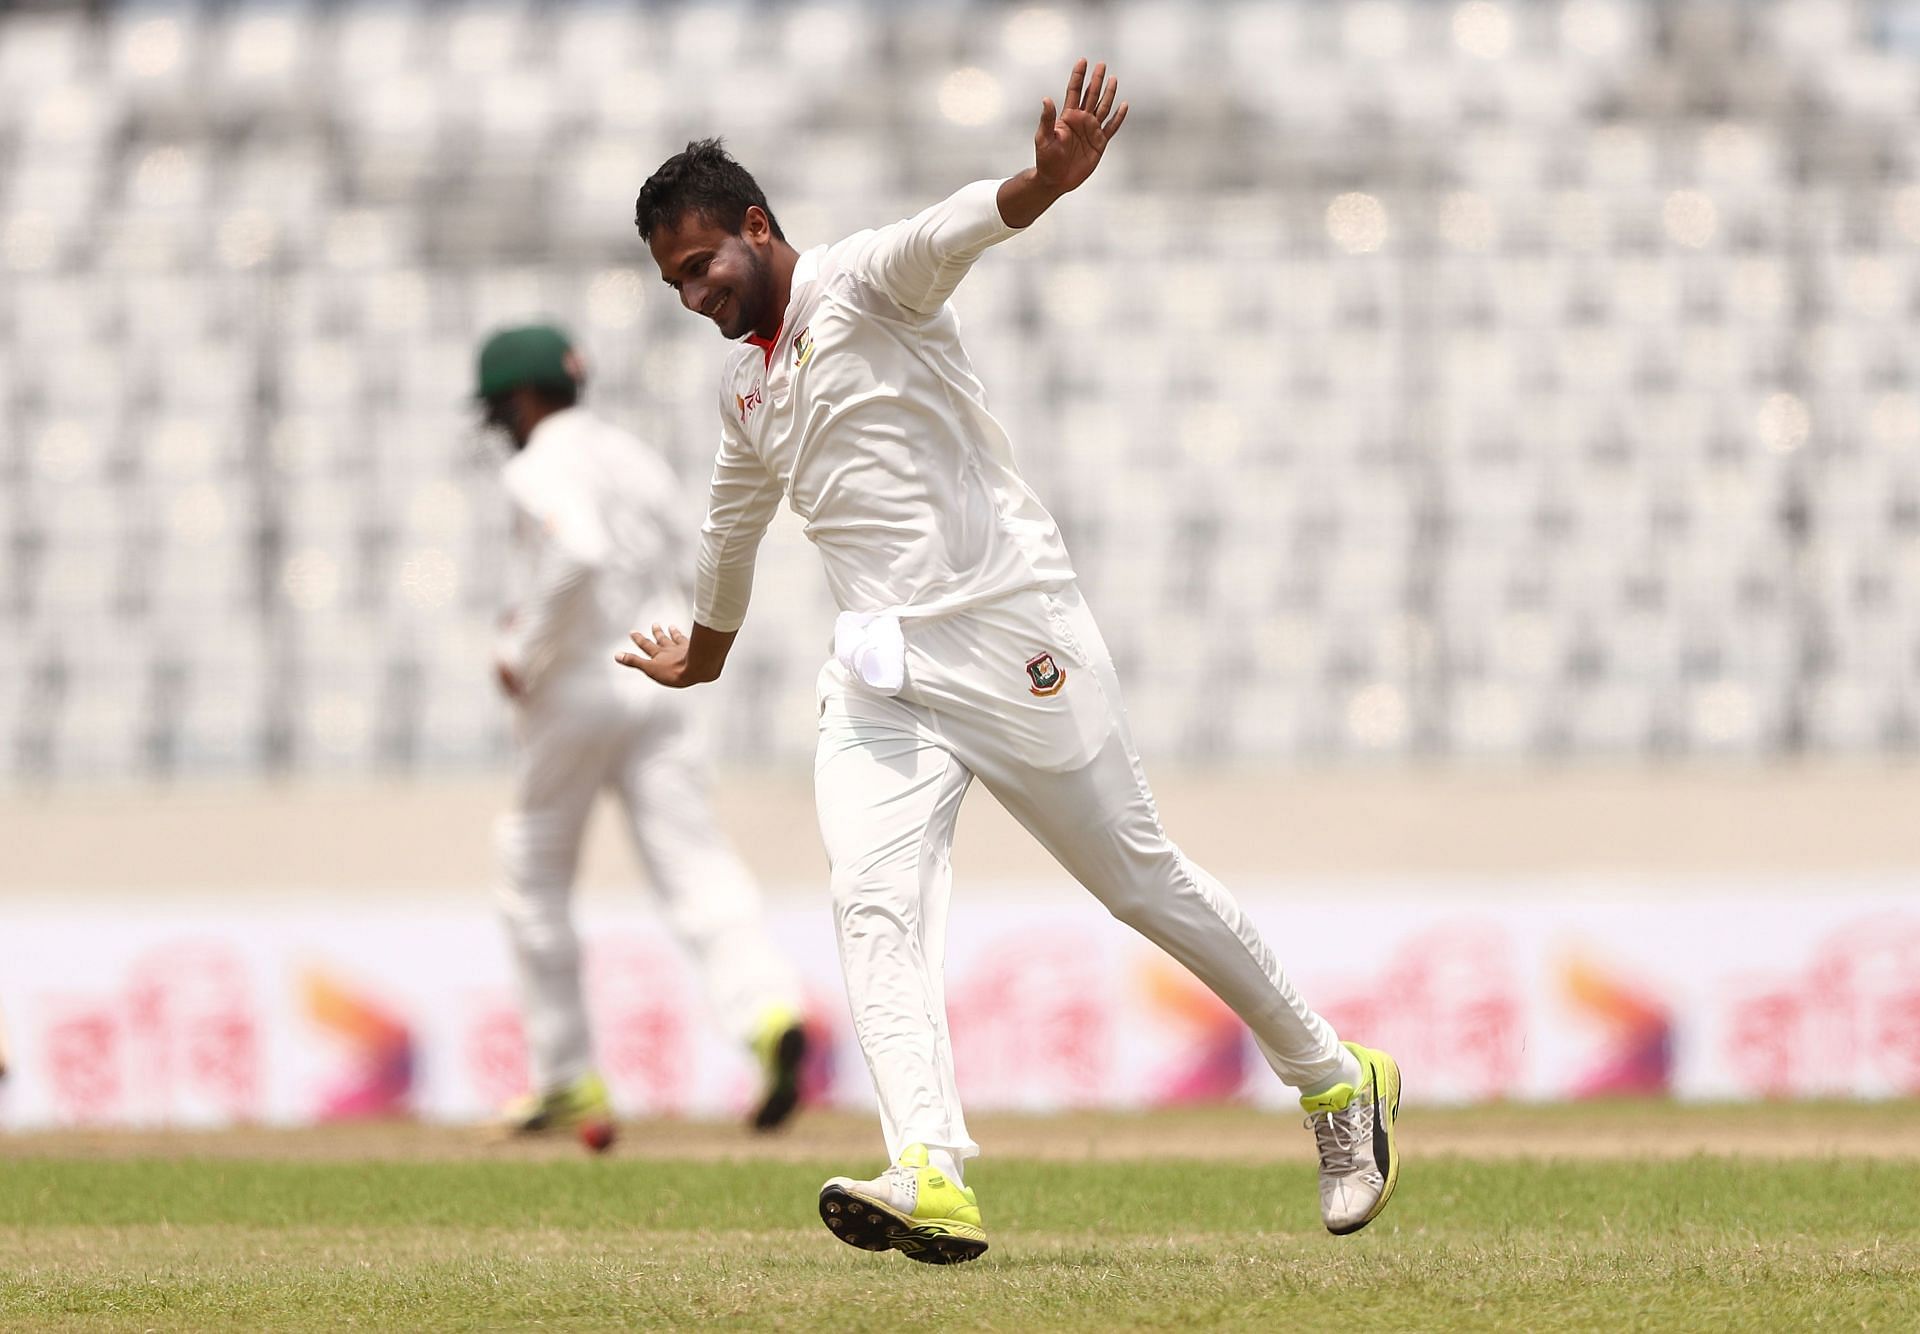 Bangladesh v Australia - 1st Test: Day 4